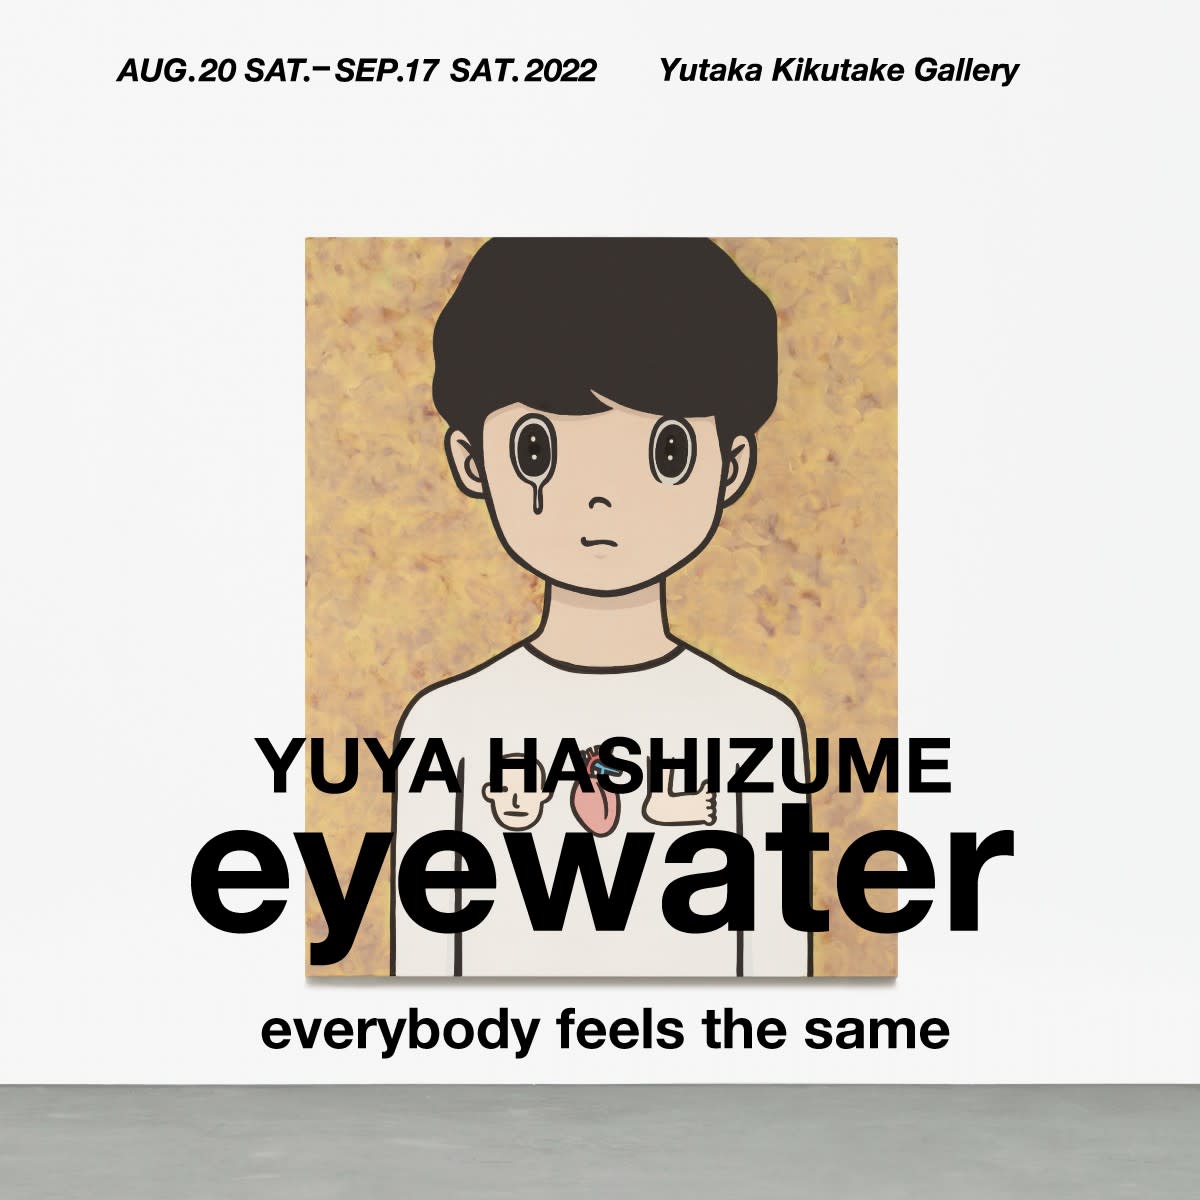 橋爪悠也 「eyewater -everybody feels the same-」 （Yutaka 